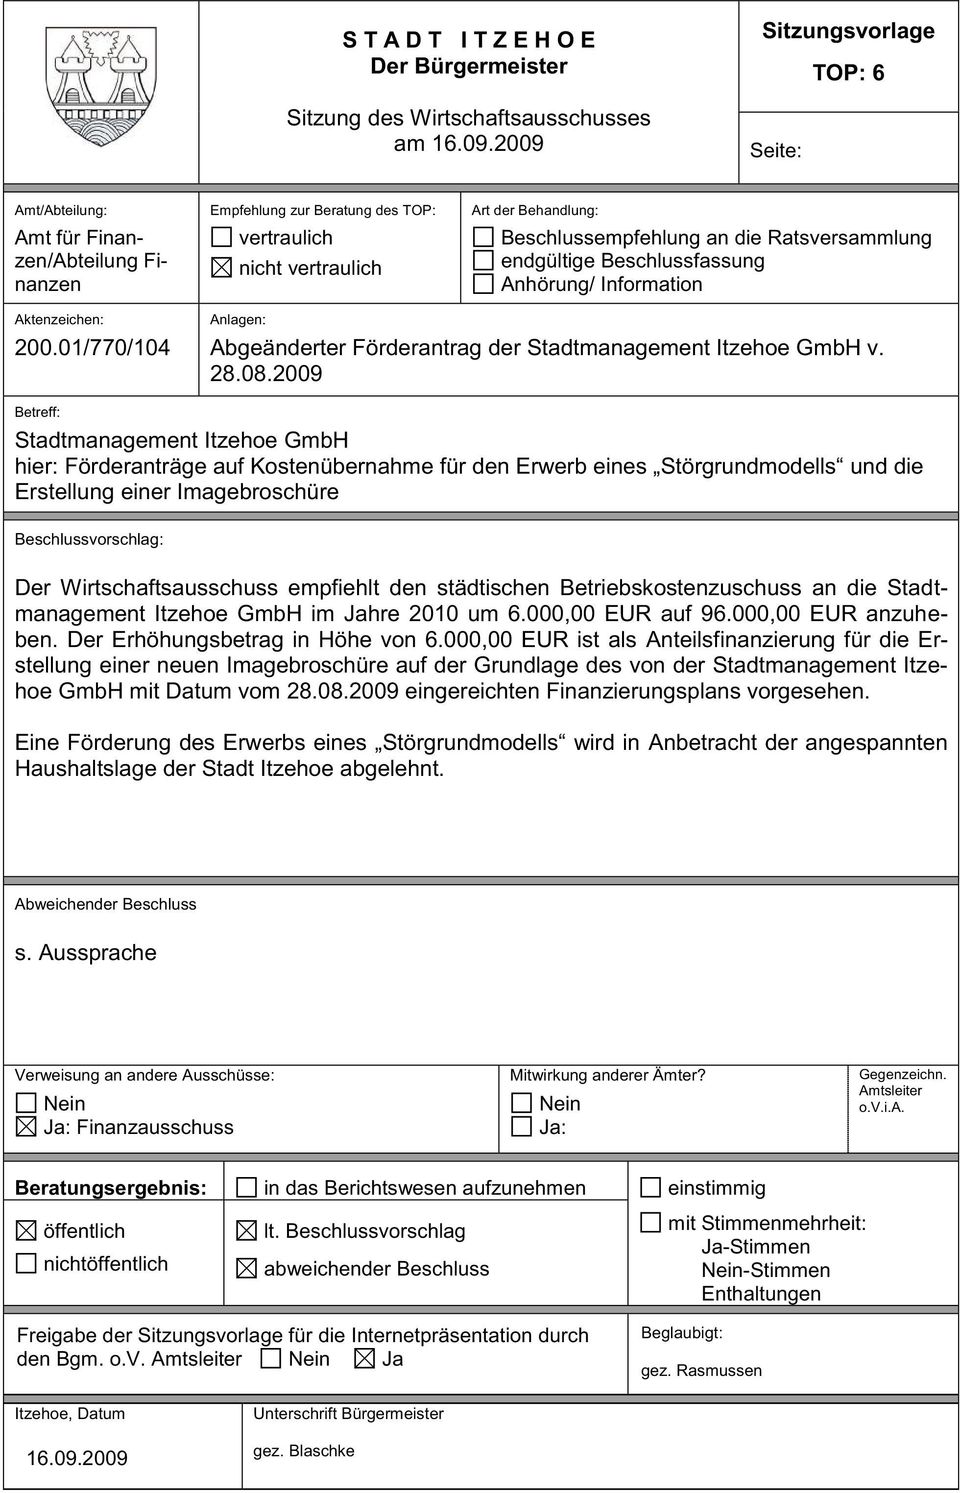 Ratsversammlung endgültige Beschlussfassung Anhörung/ Information Aktenzeichen: 200.01/770/104 Anlagen: Abgeänderter Förderantrag der Stadtmanagement Itzehoe GmbH v. 28.08.